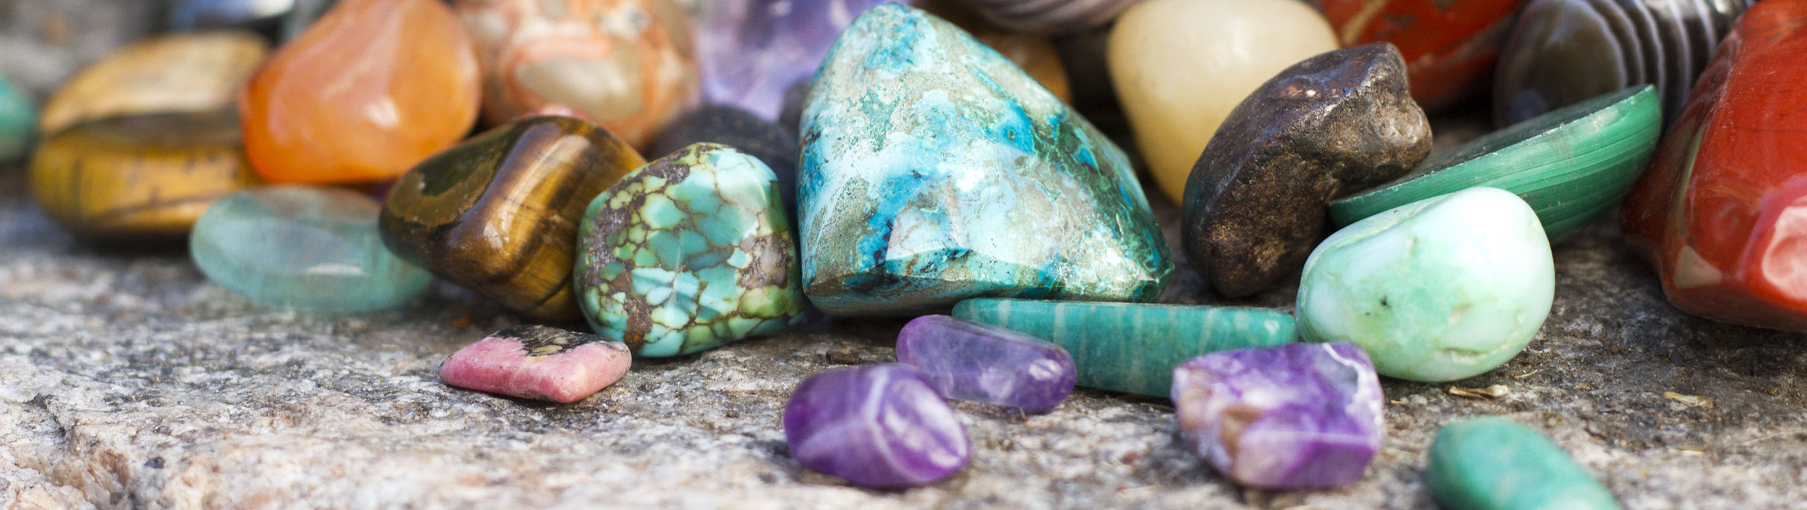 Все о полудрагоценных камнях: свойства, разновидности, цвета, отличие отдрагоценных камней